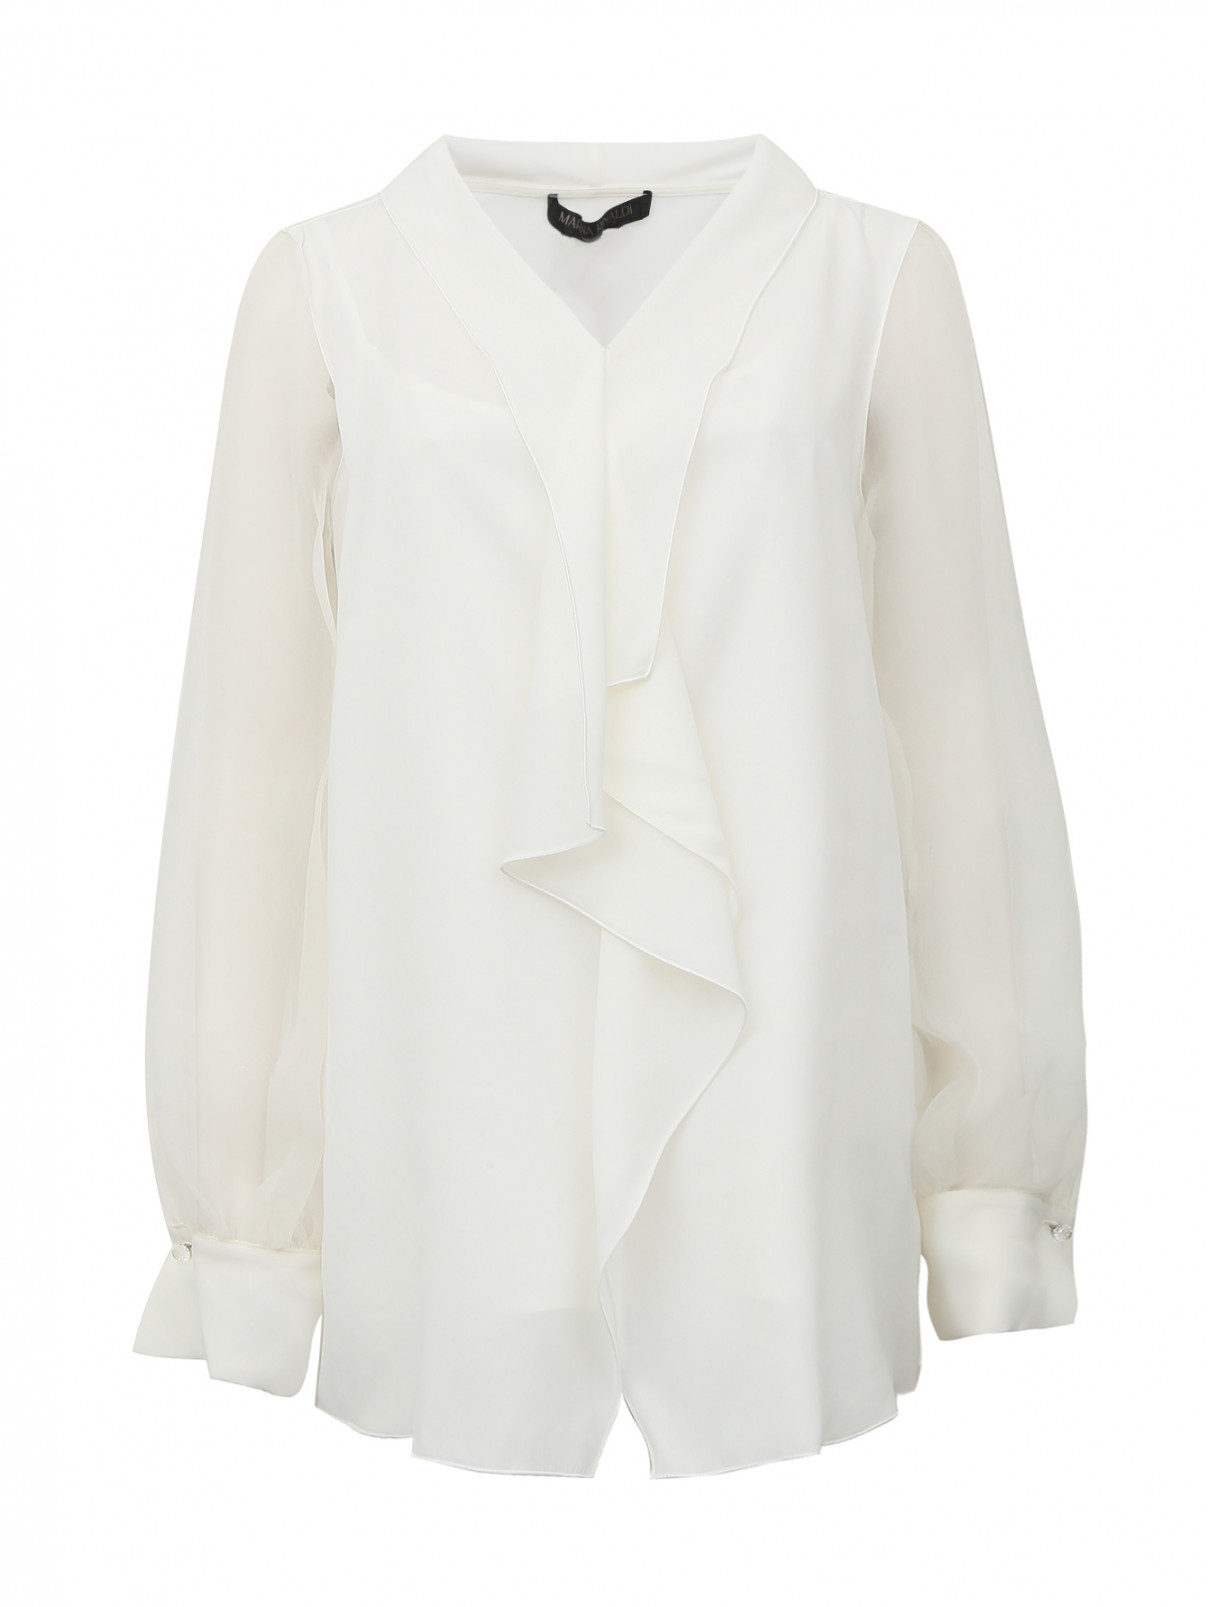 Блуза с драпировкой Marina Rinaldi  –  Общий вид  – Цвет:  Белый